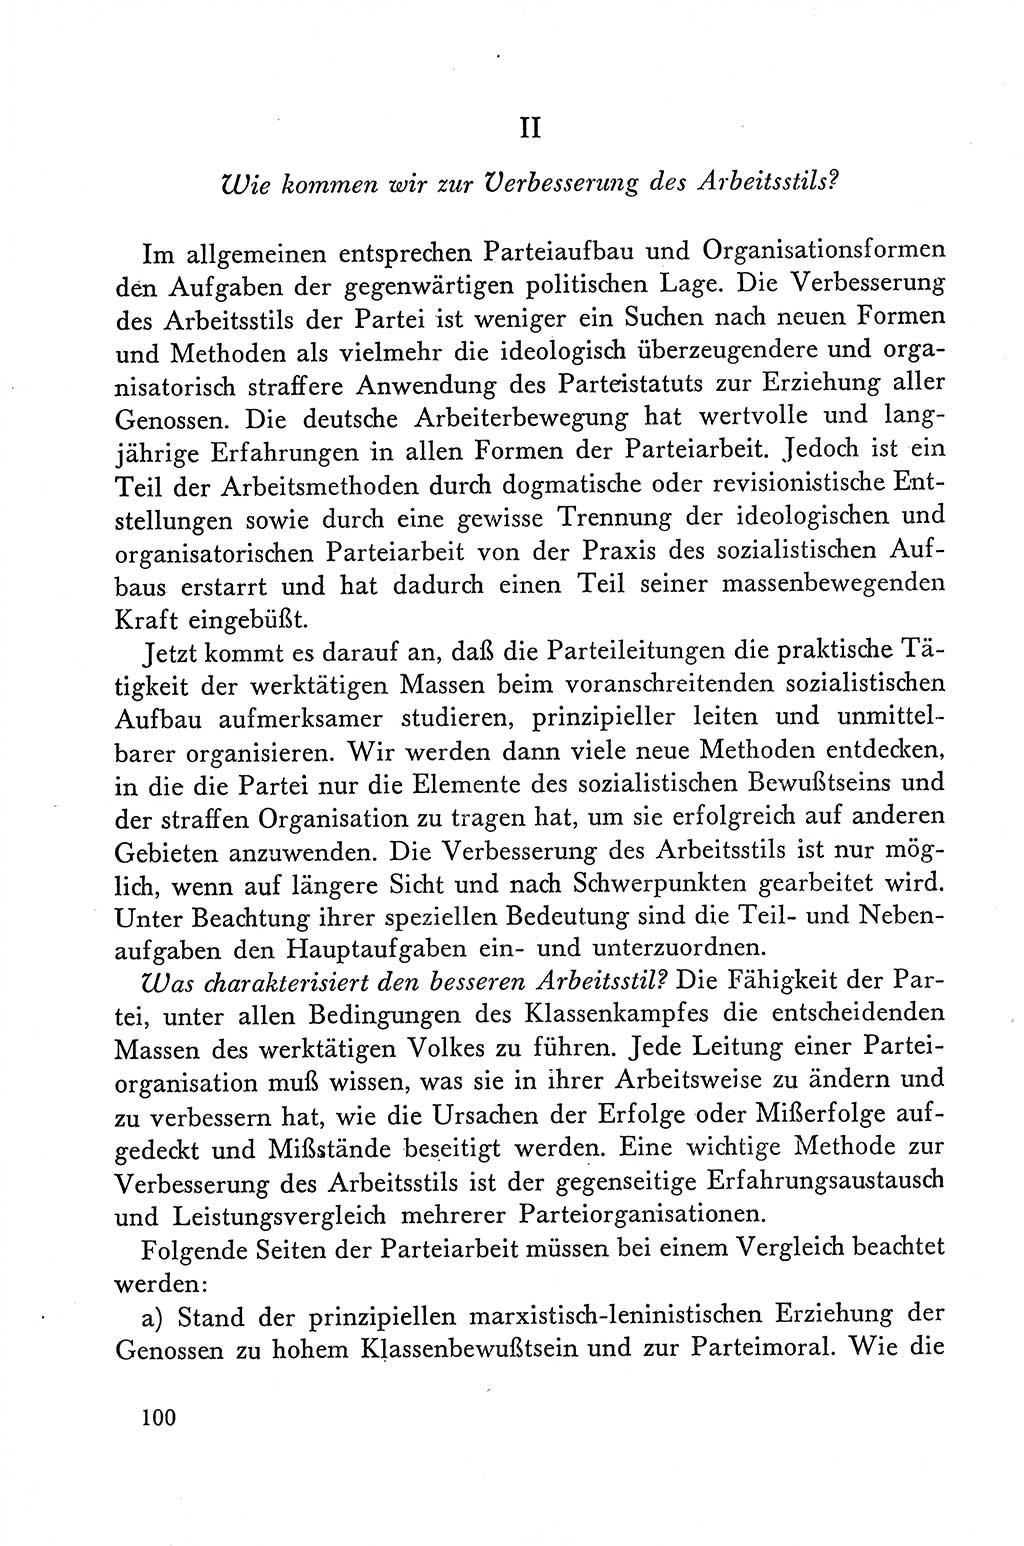 Dokumente der Sozialistischen Einheitspartei Deutschlands (SED) [Deutsche Demokratische Republik (DDR)] 1958-1959, Seite 100 (Dok. SED DDR 1958-1959, S. 100)